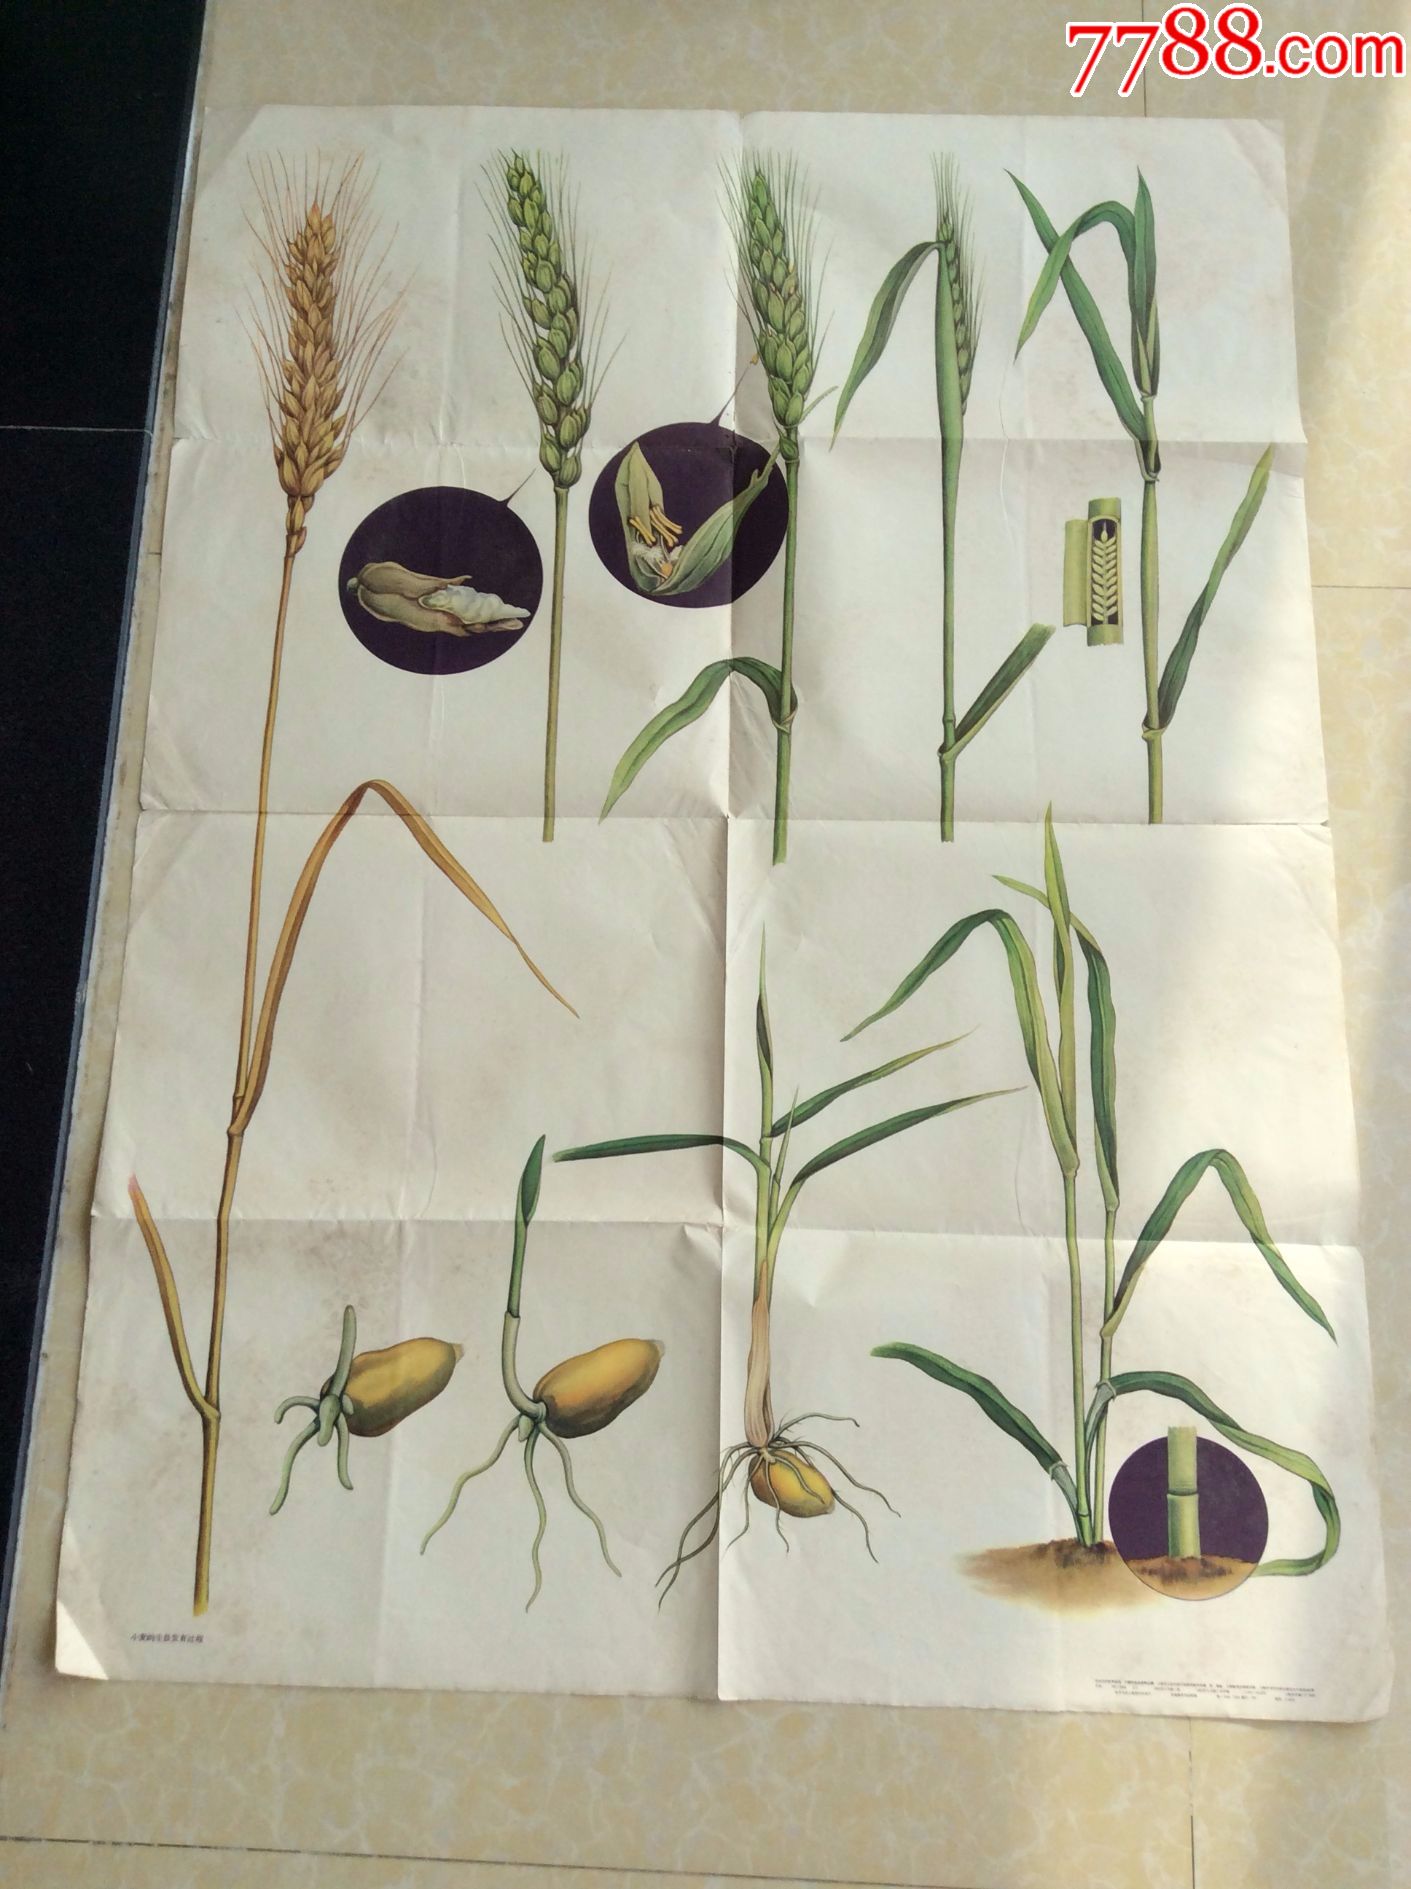 小麦的生长发育过程